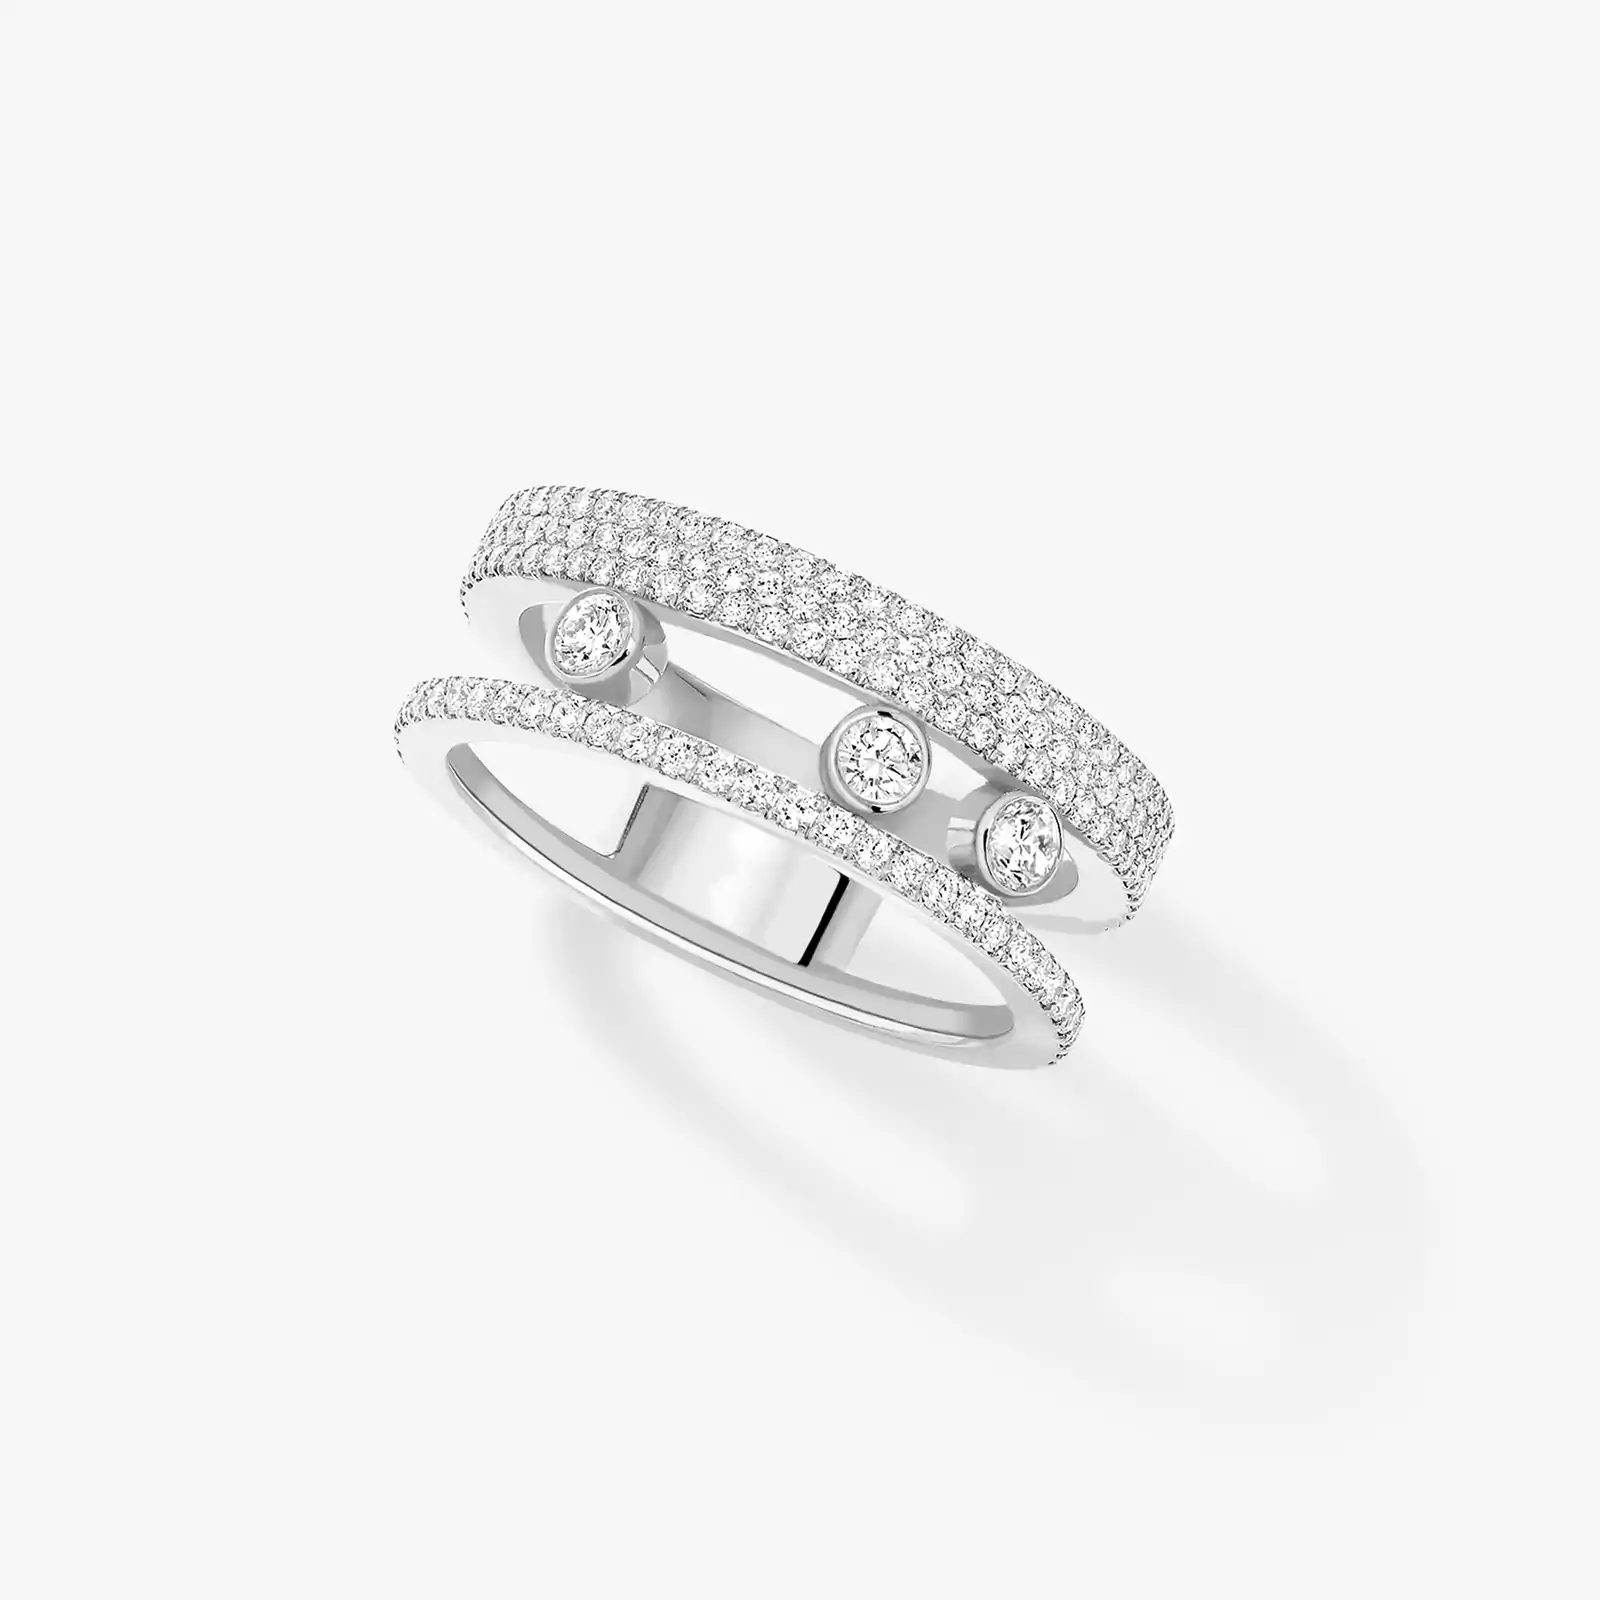 Move Romane Pavé White Gold For Her Diamond Ring 07128-WG